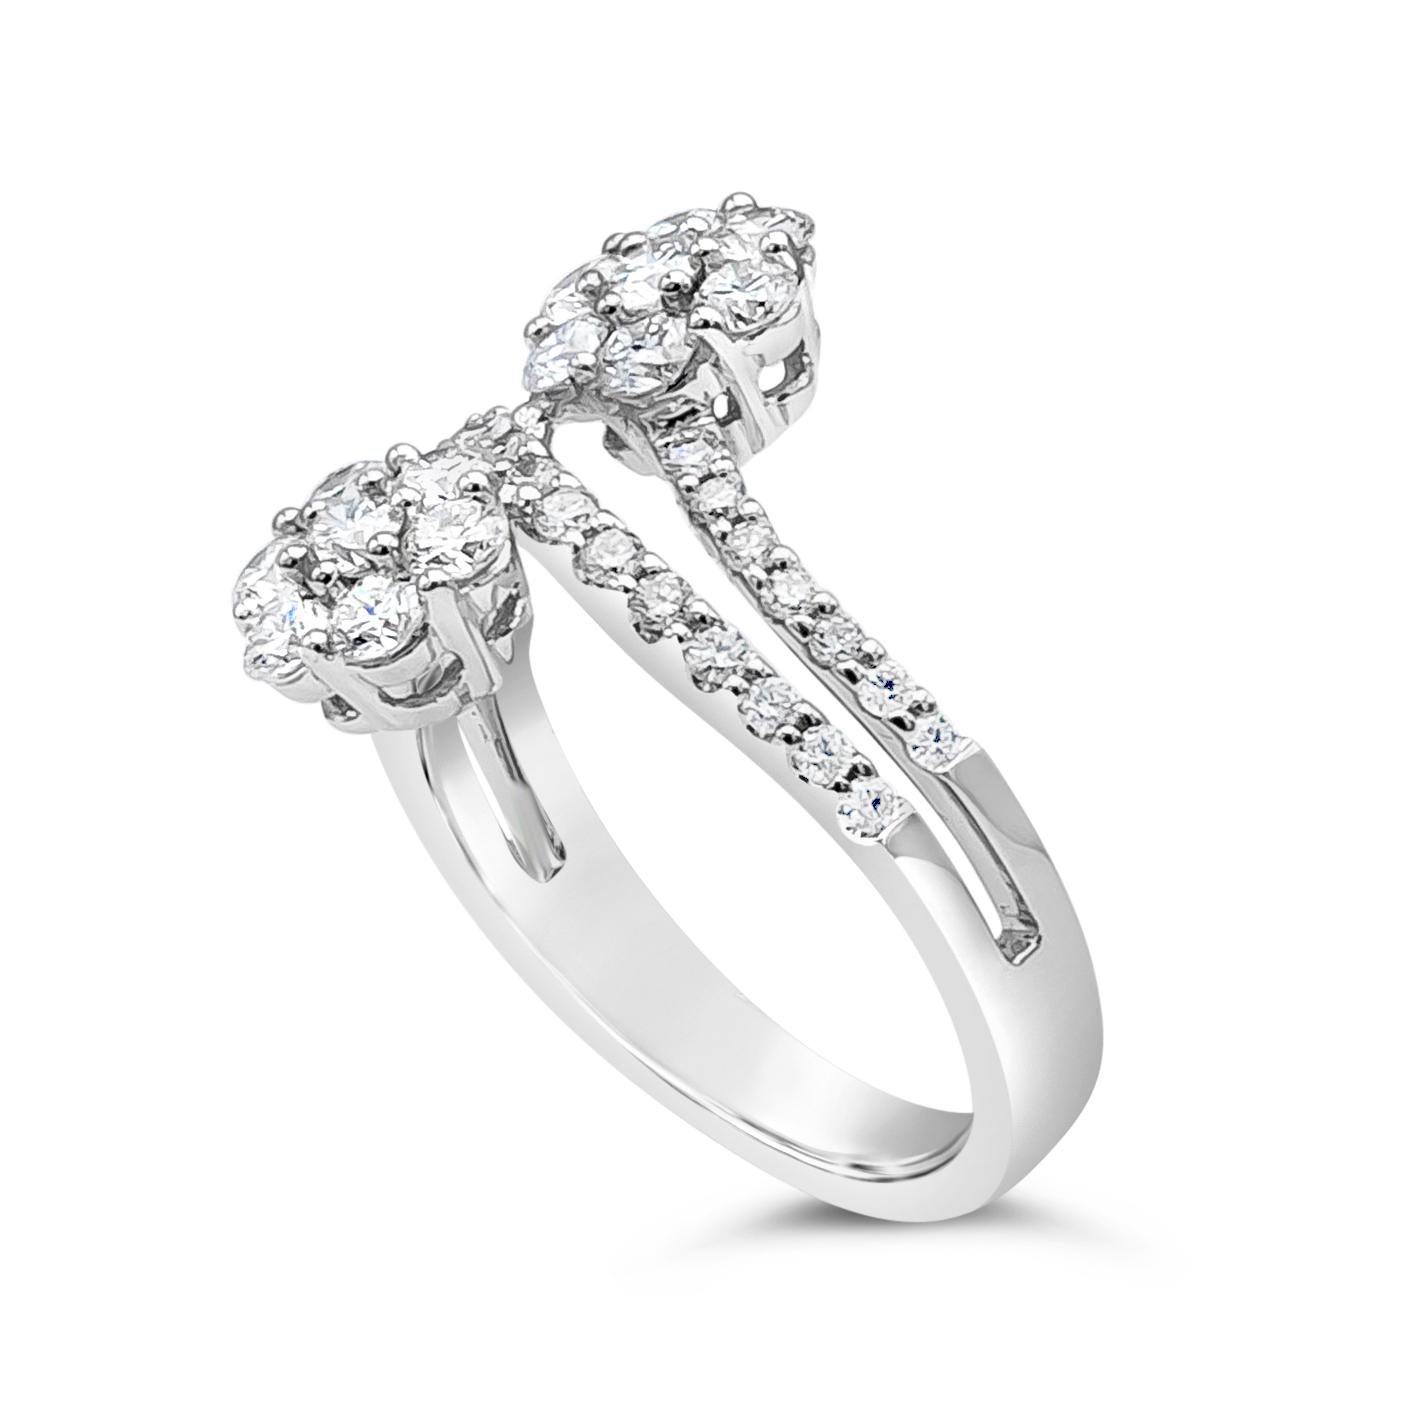 Contemporary Roman Malakov 1.20 Carat Total Brilliant Round Diamond Illusion Fashion Ring For Sale